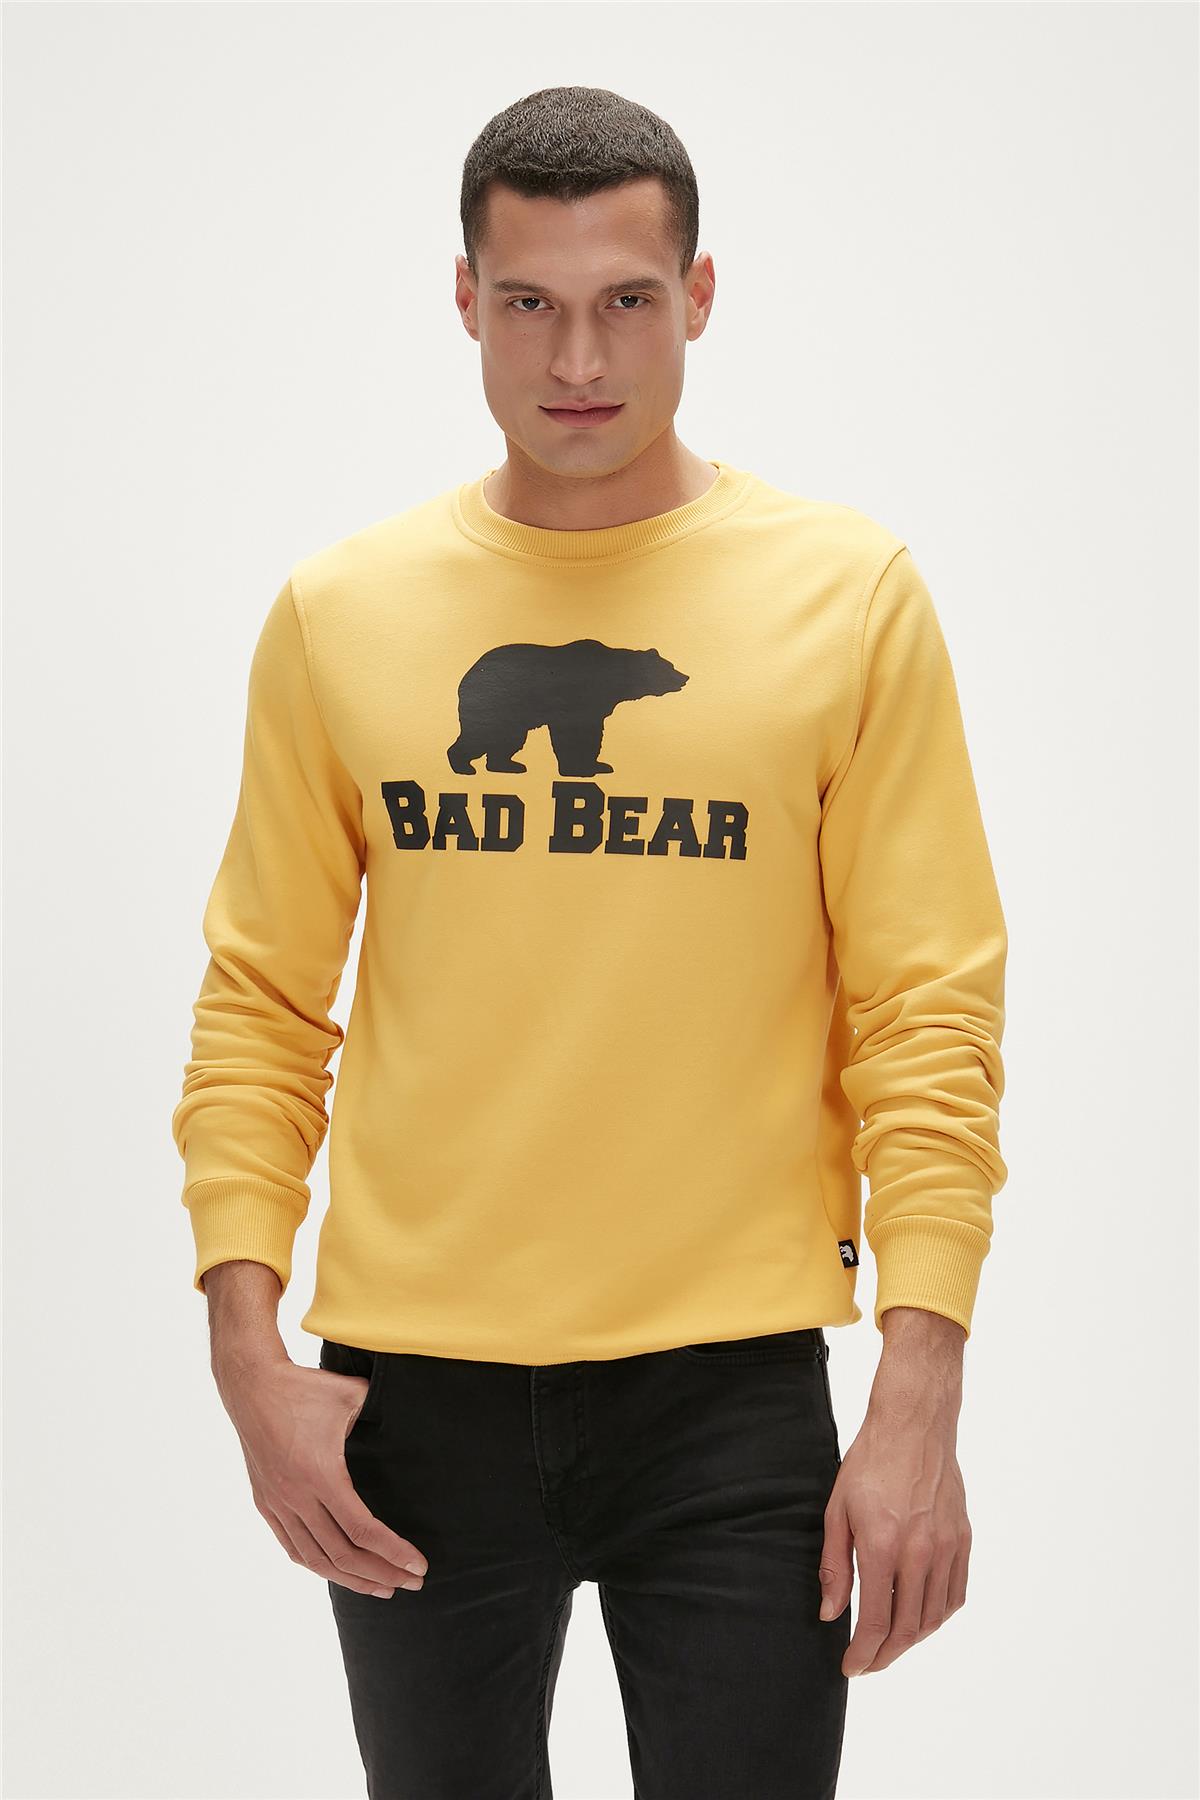 Bad Bear Crewneck Hardal Baskılı Erkek Sweatshirt | BAD BEAR